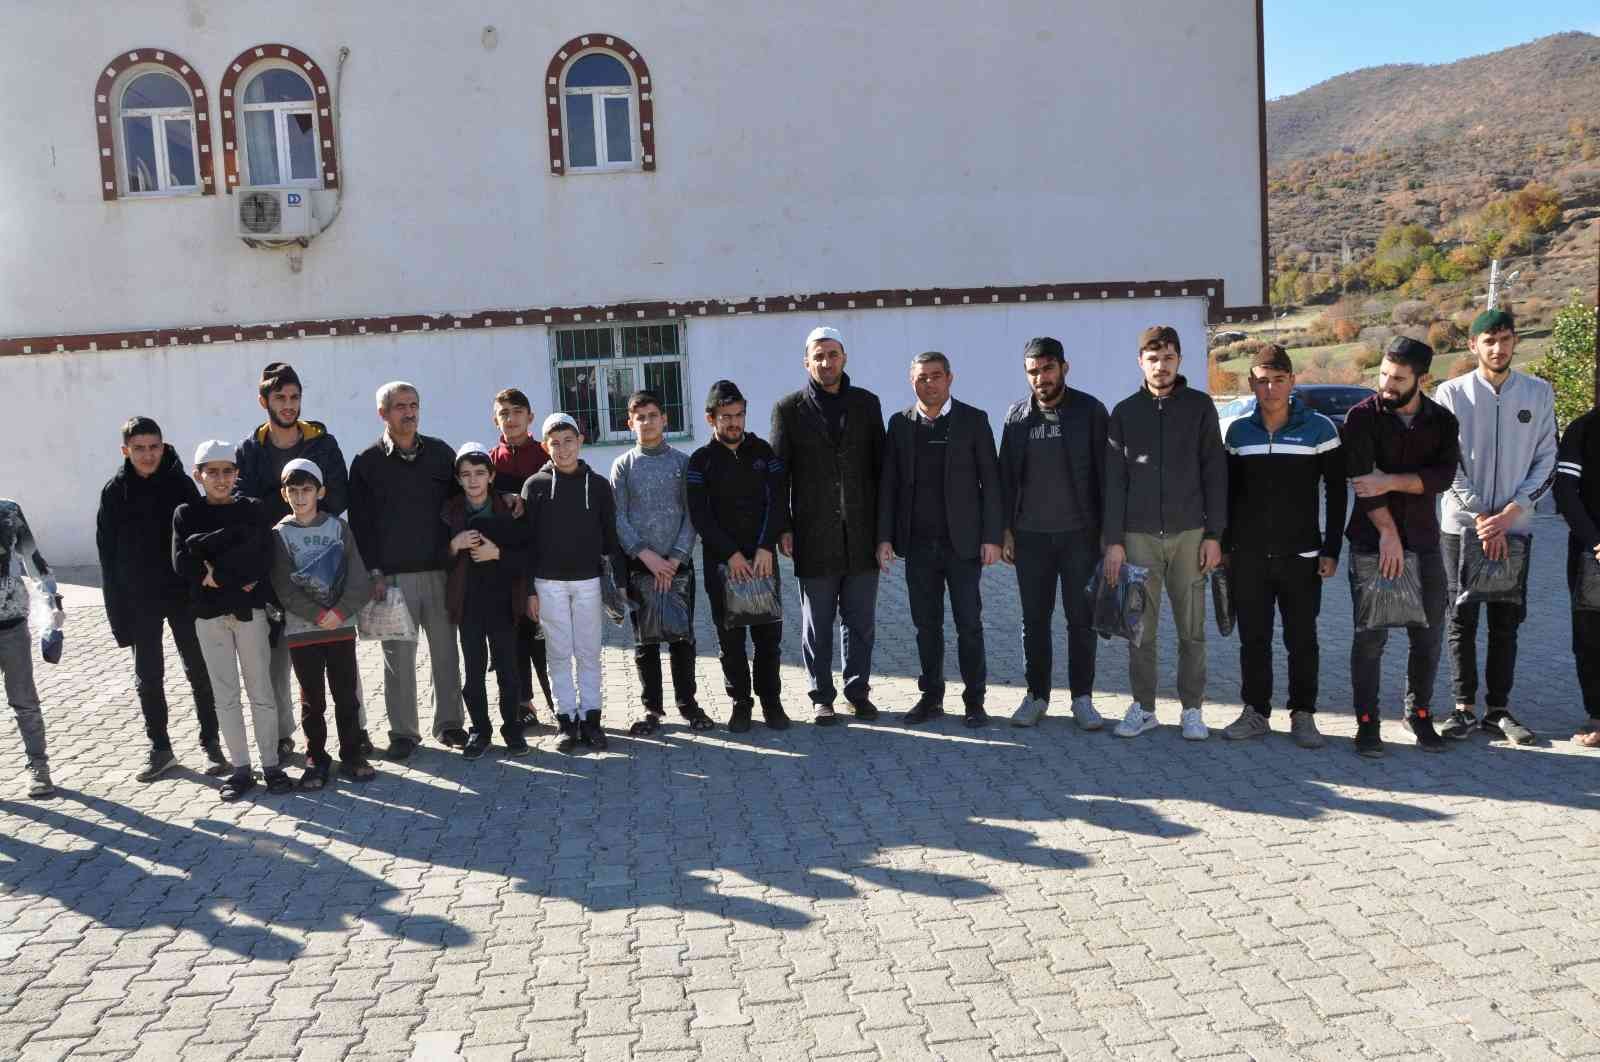 Şehit ailesi ihtiyaç sahibi 500 kişiye kışlık kıyafet dağıttı #batman